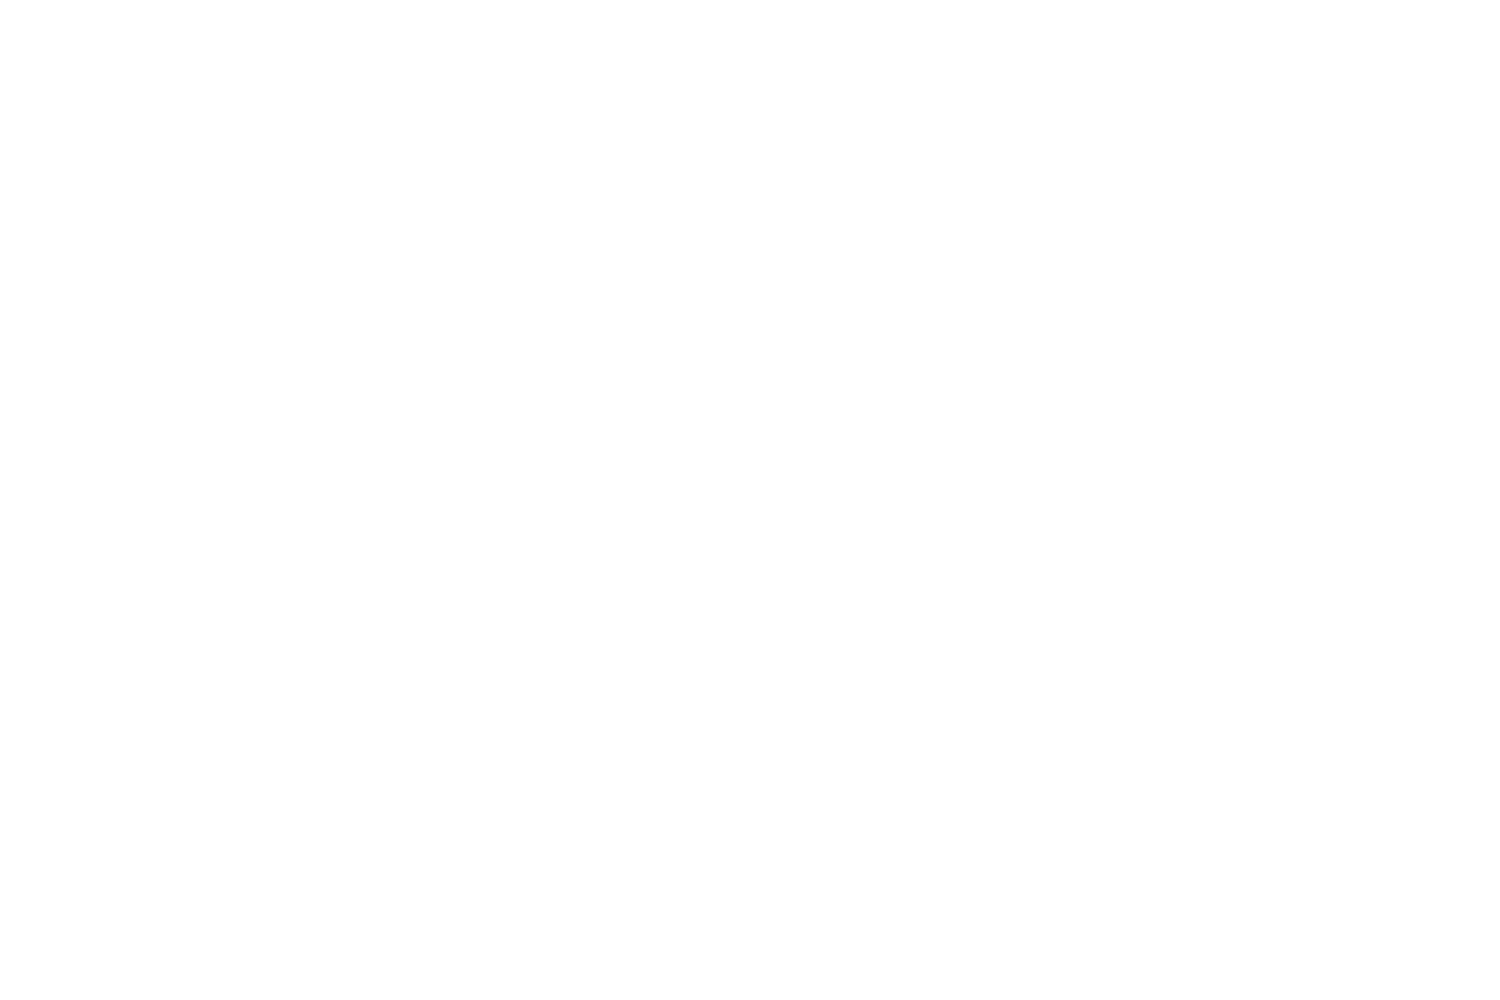 2026 Multimedia Studio